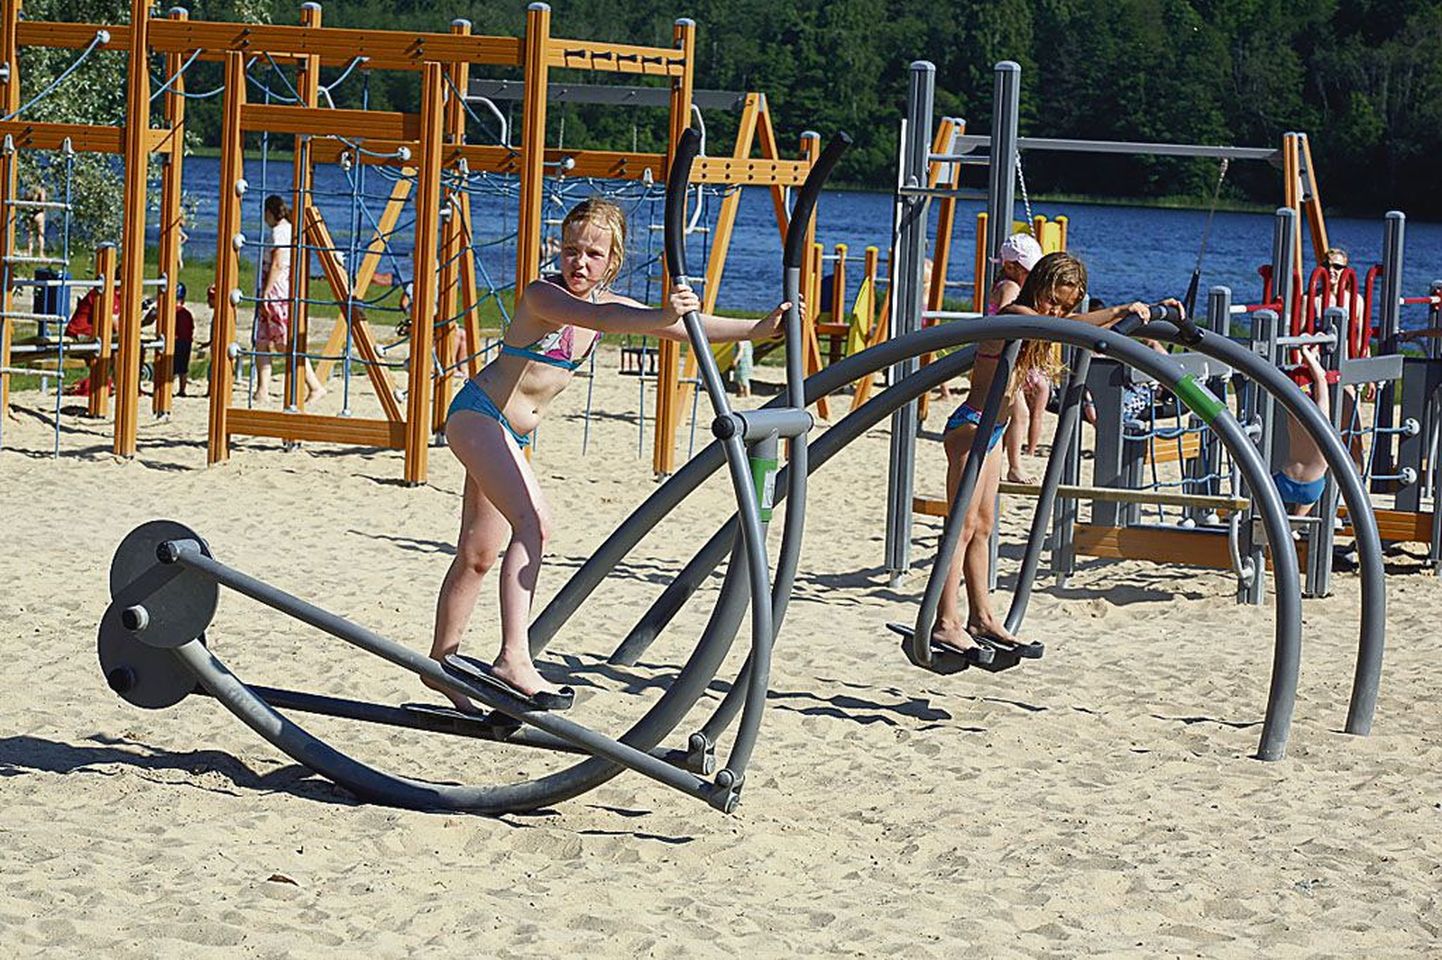 Väidetavalt on Viljandi järve ääres alles paar nädalat tagasi avatud laste mänguväljak Eesti suurim. 1,9 miljonit krooni maksma läinud atraktsioonide pargi populaarseim on trossi pidi sõitmine ehk Tarzani rada. Selle juures ei lõpe järjekord kunagi.